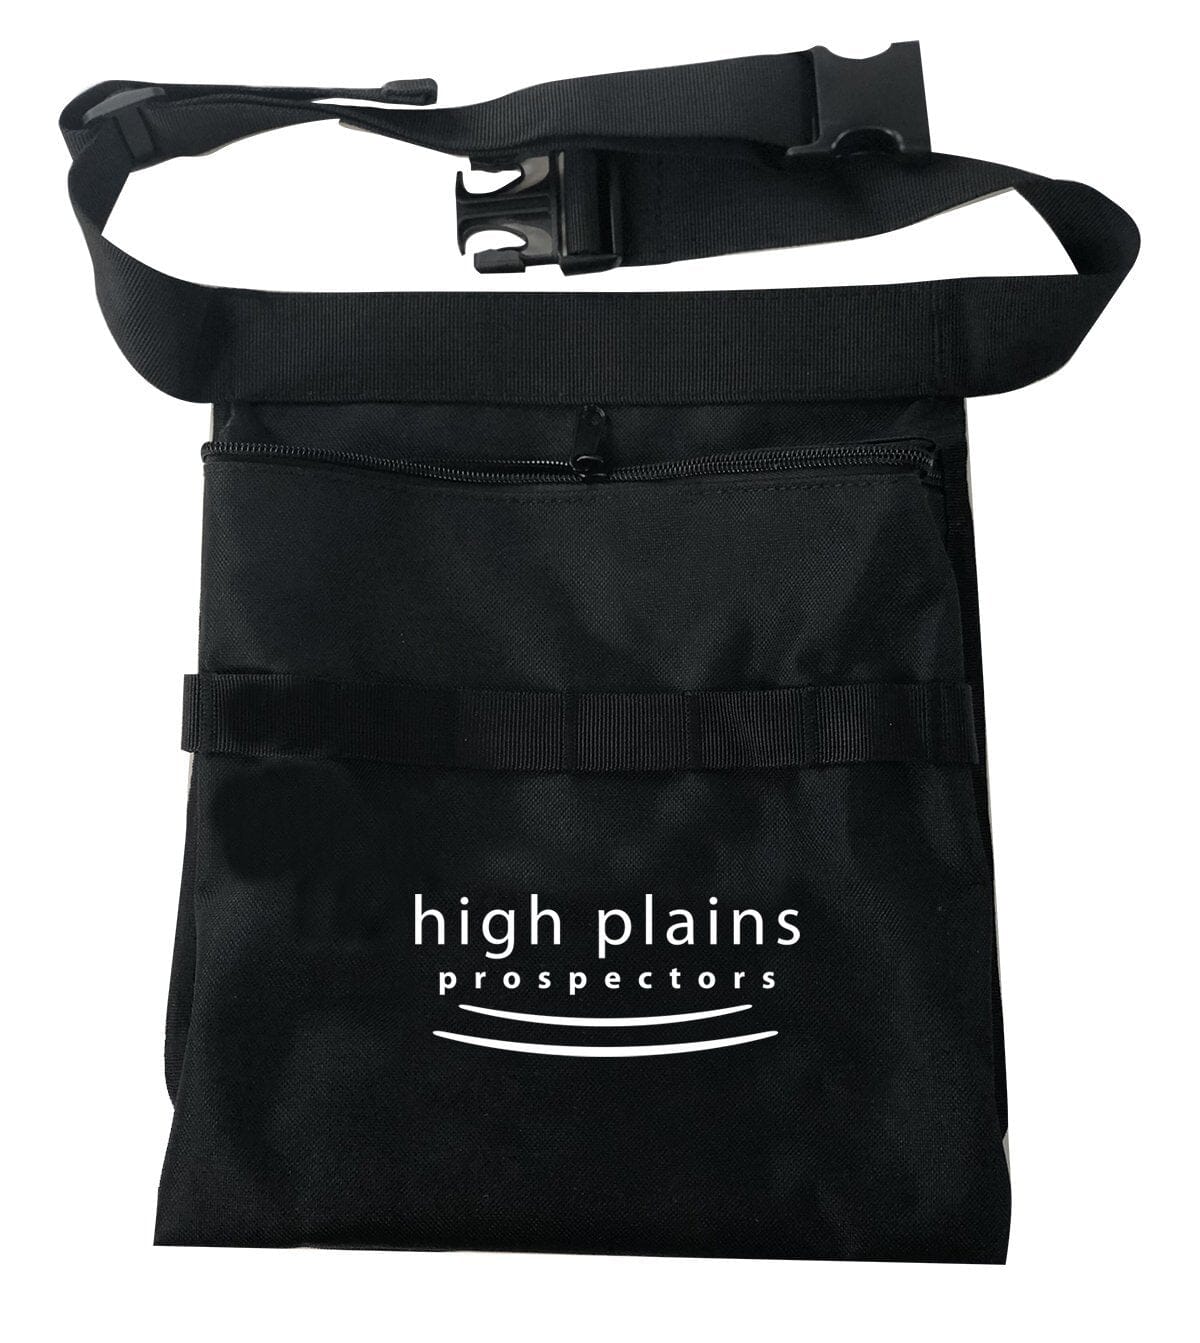 High Plains Prospectors metal detecting finds pouch